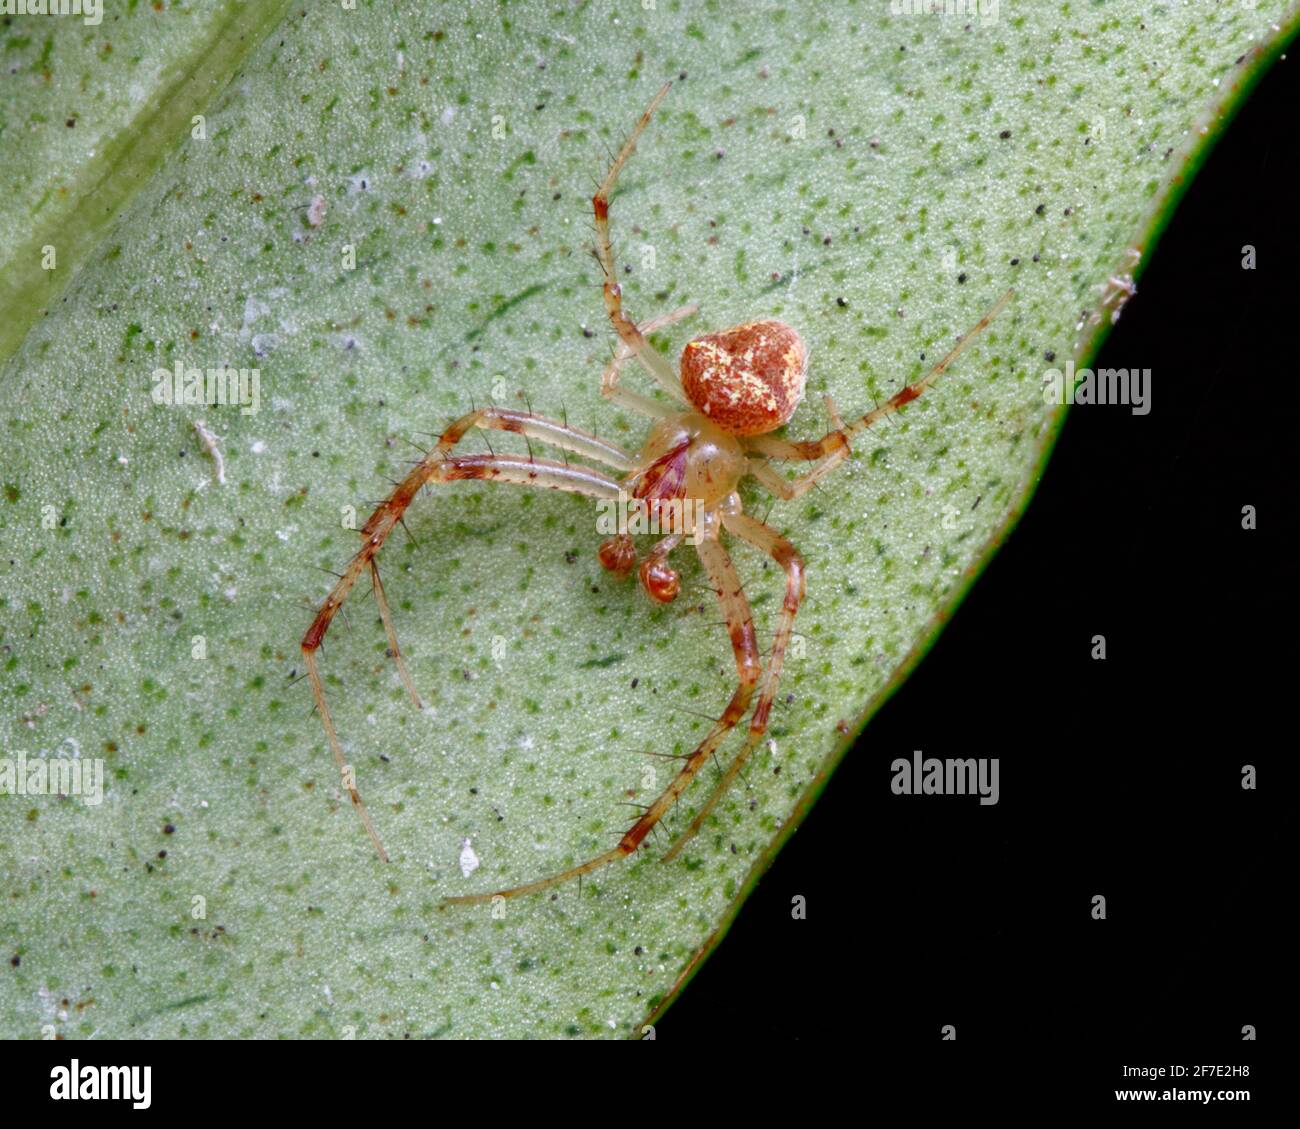 Una araña imitadora, Mimetidae, escondida bajo una hoja vegetal. Foto de stock